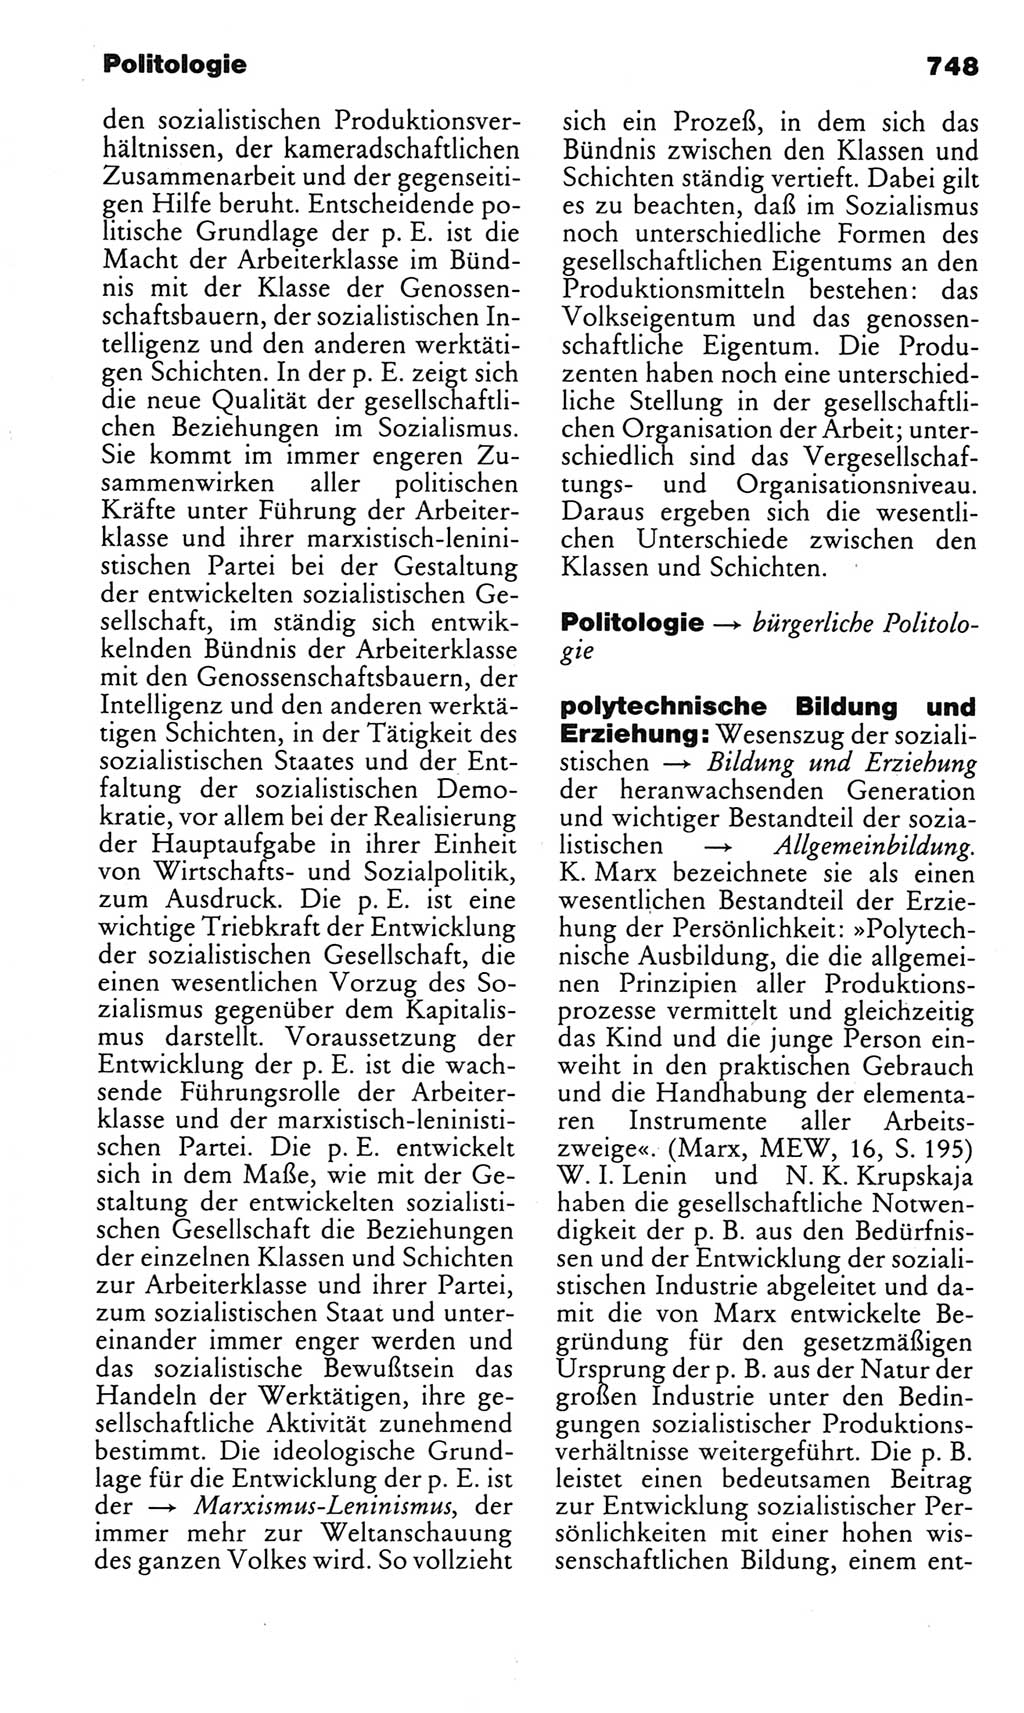 Kleines politisches Wörterbuch [Deutsche Demokratische Republik (DDR)] 1983, Seite 748 (Kl. pol. Wb. DDR 1983, S. 748)